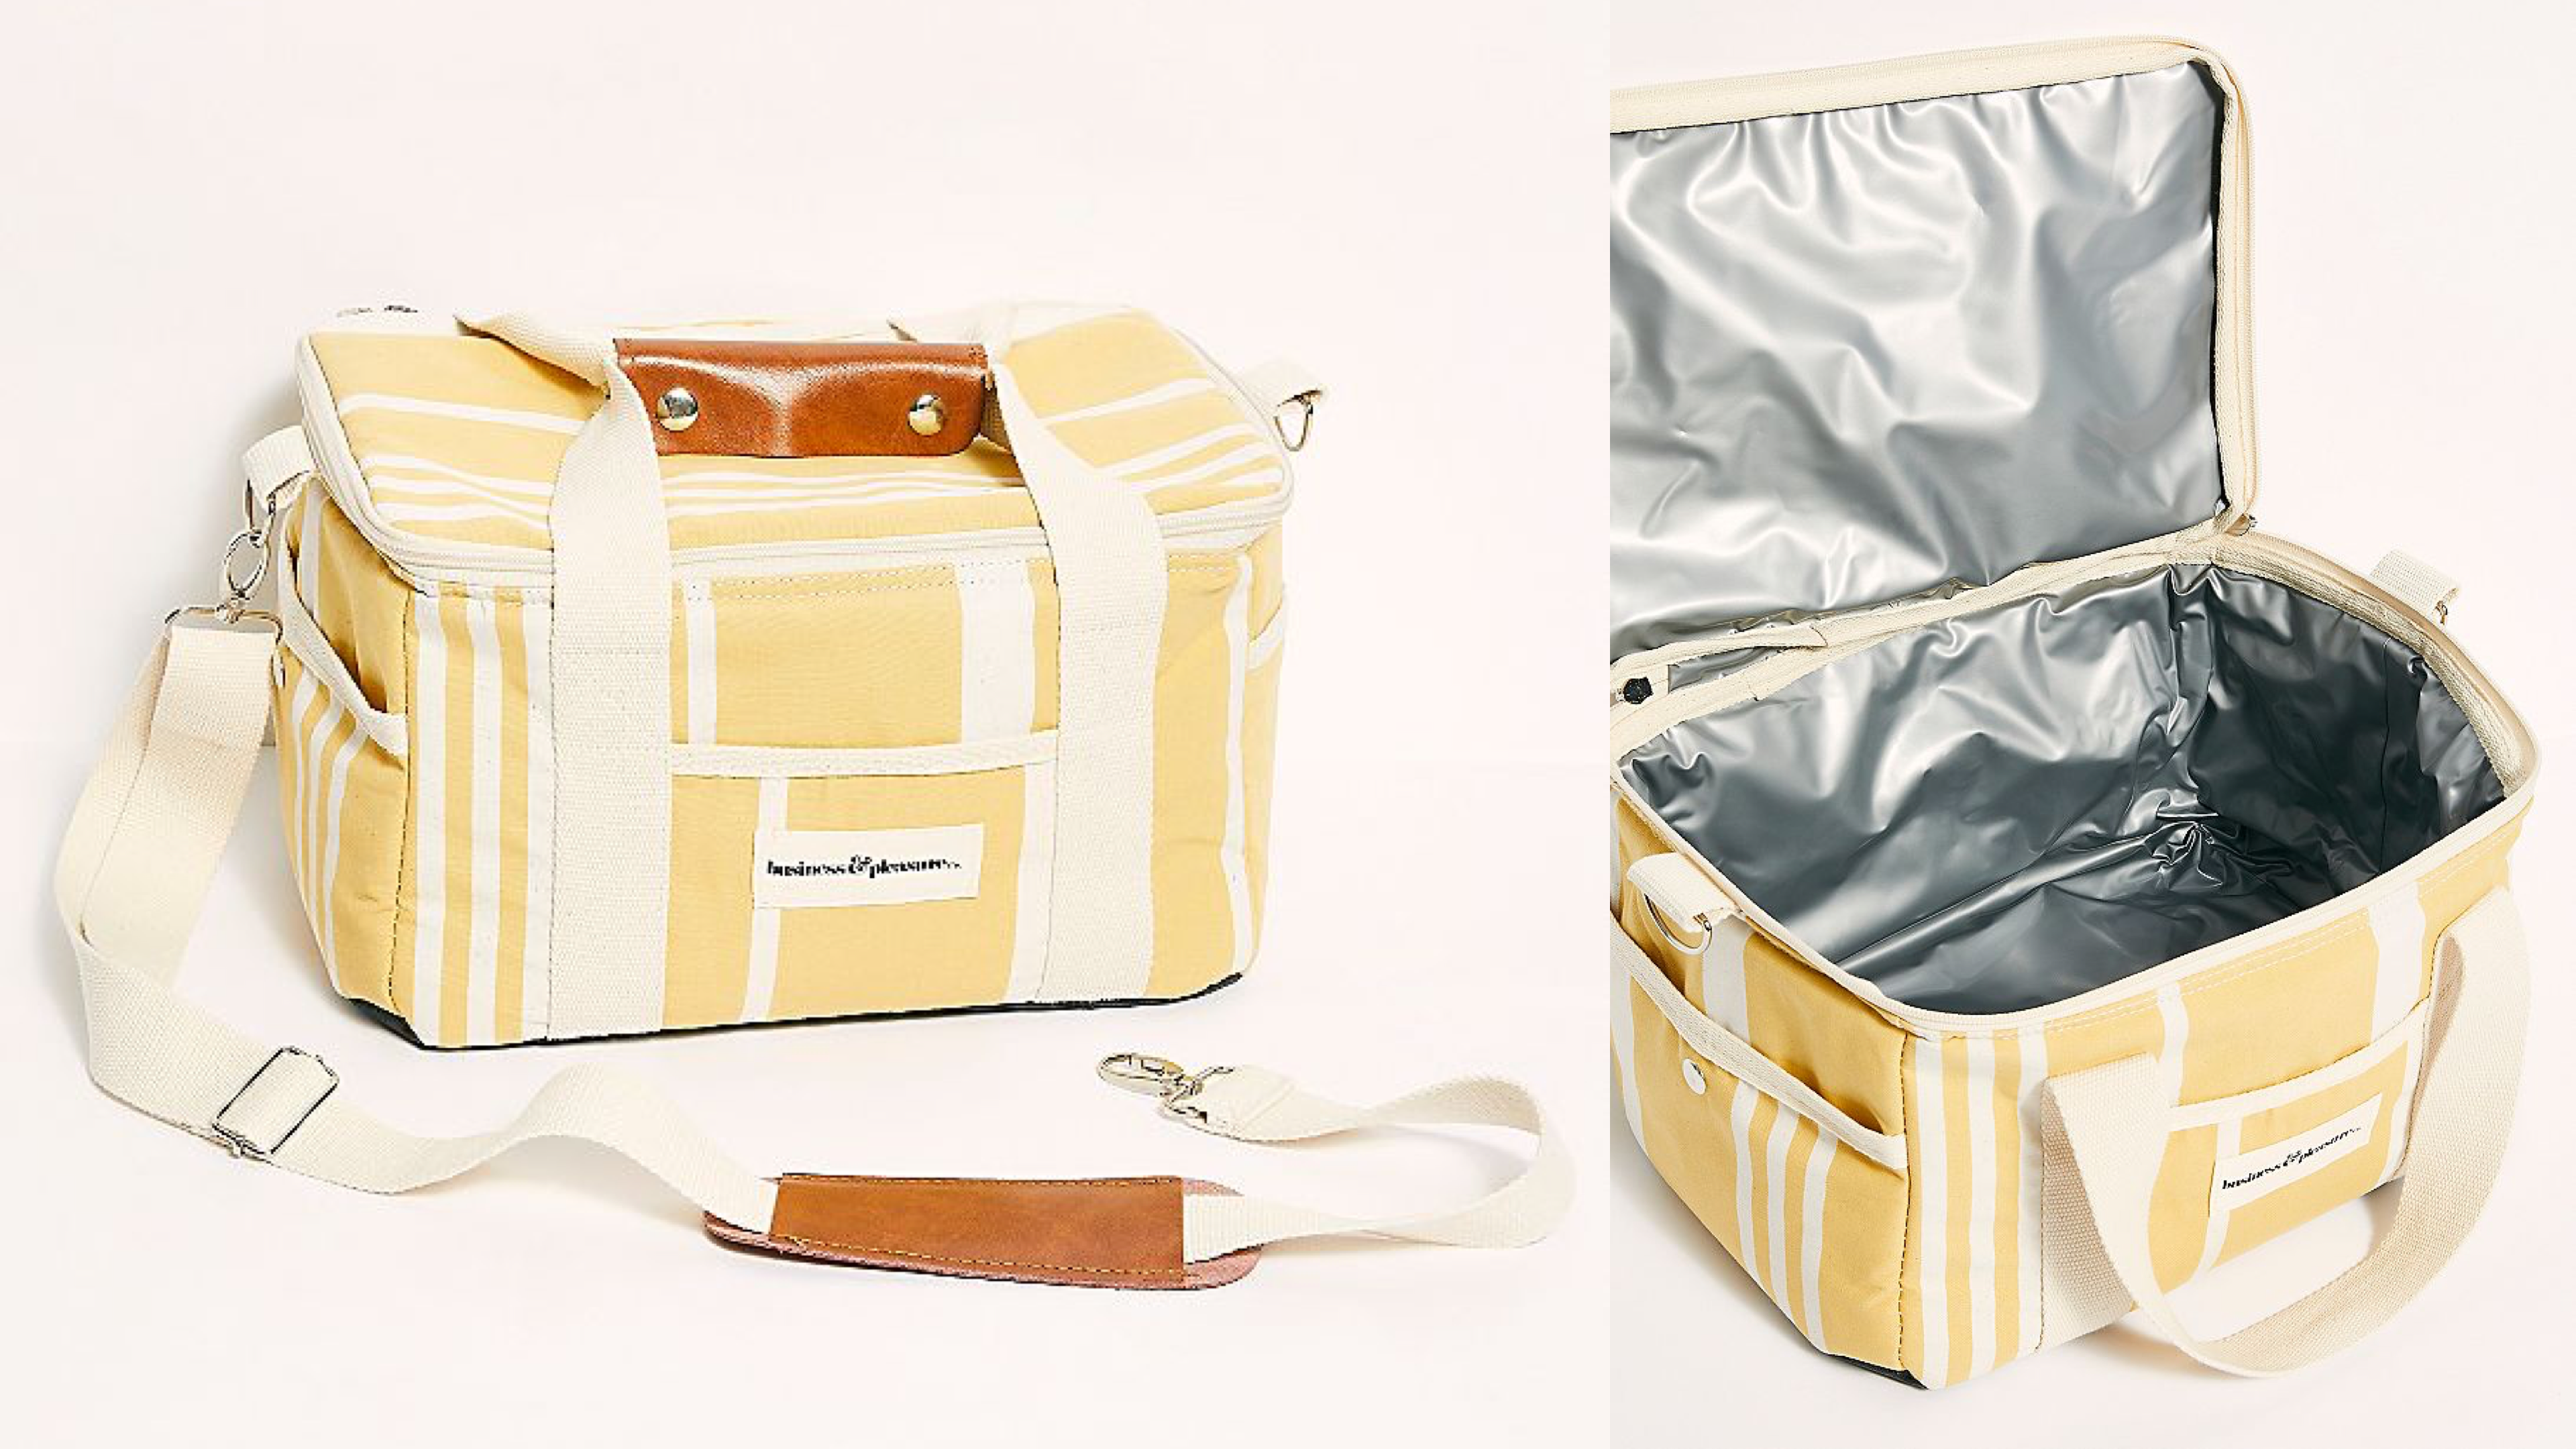 cooler bag for picnics